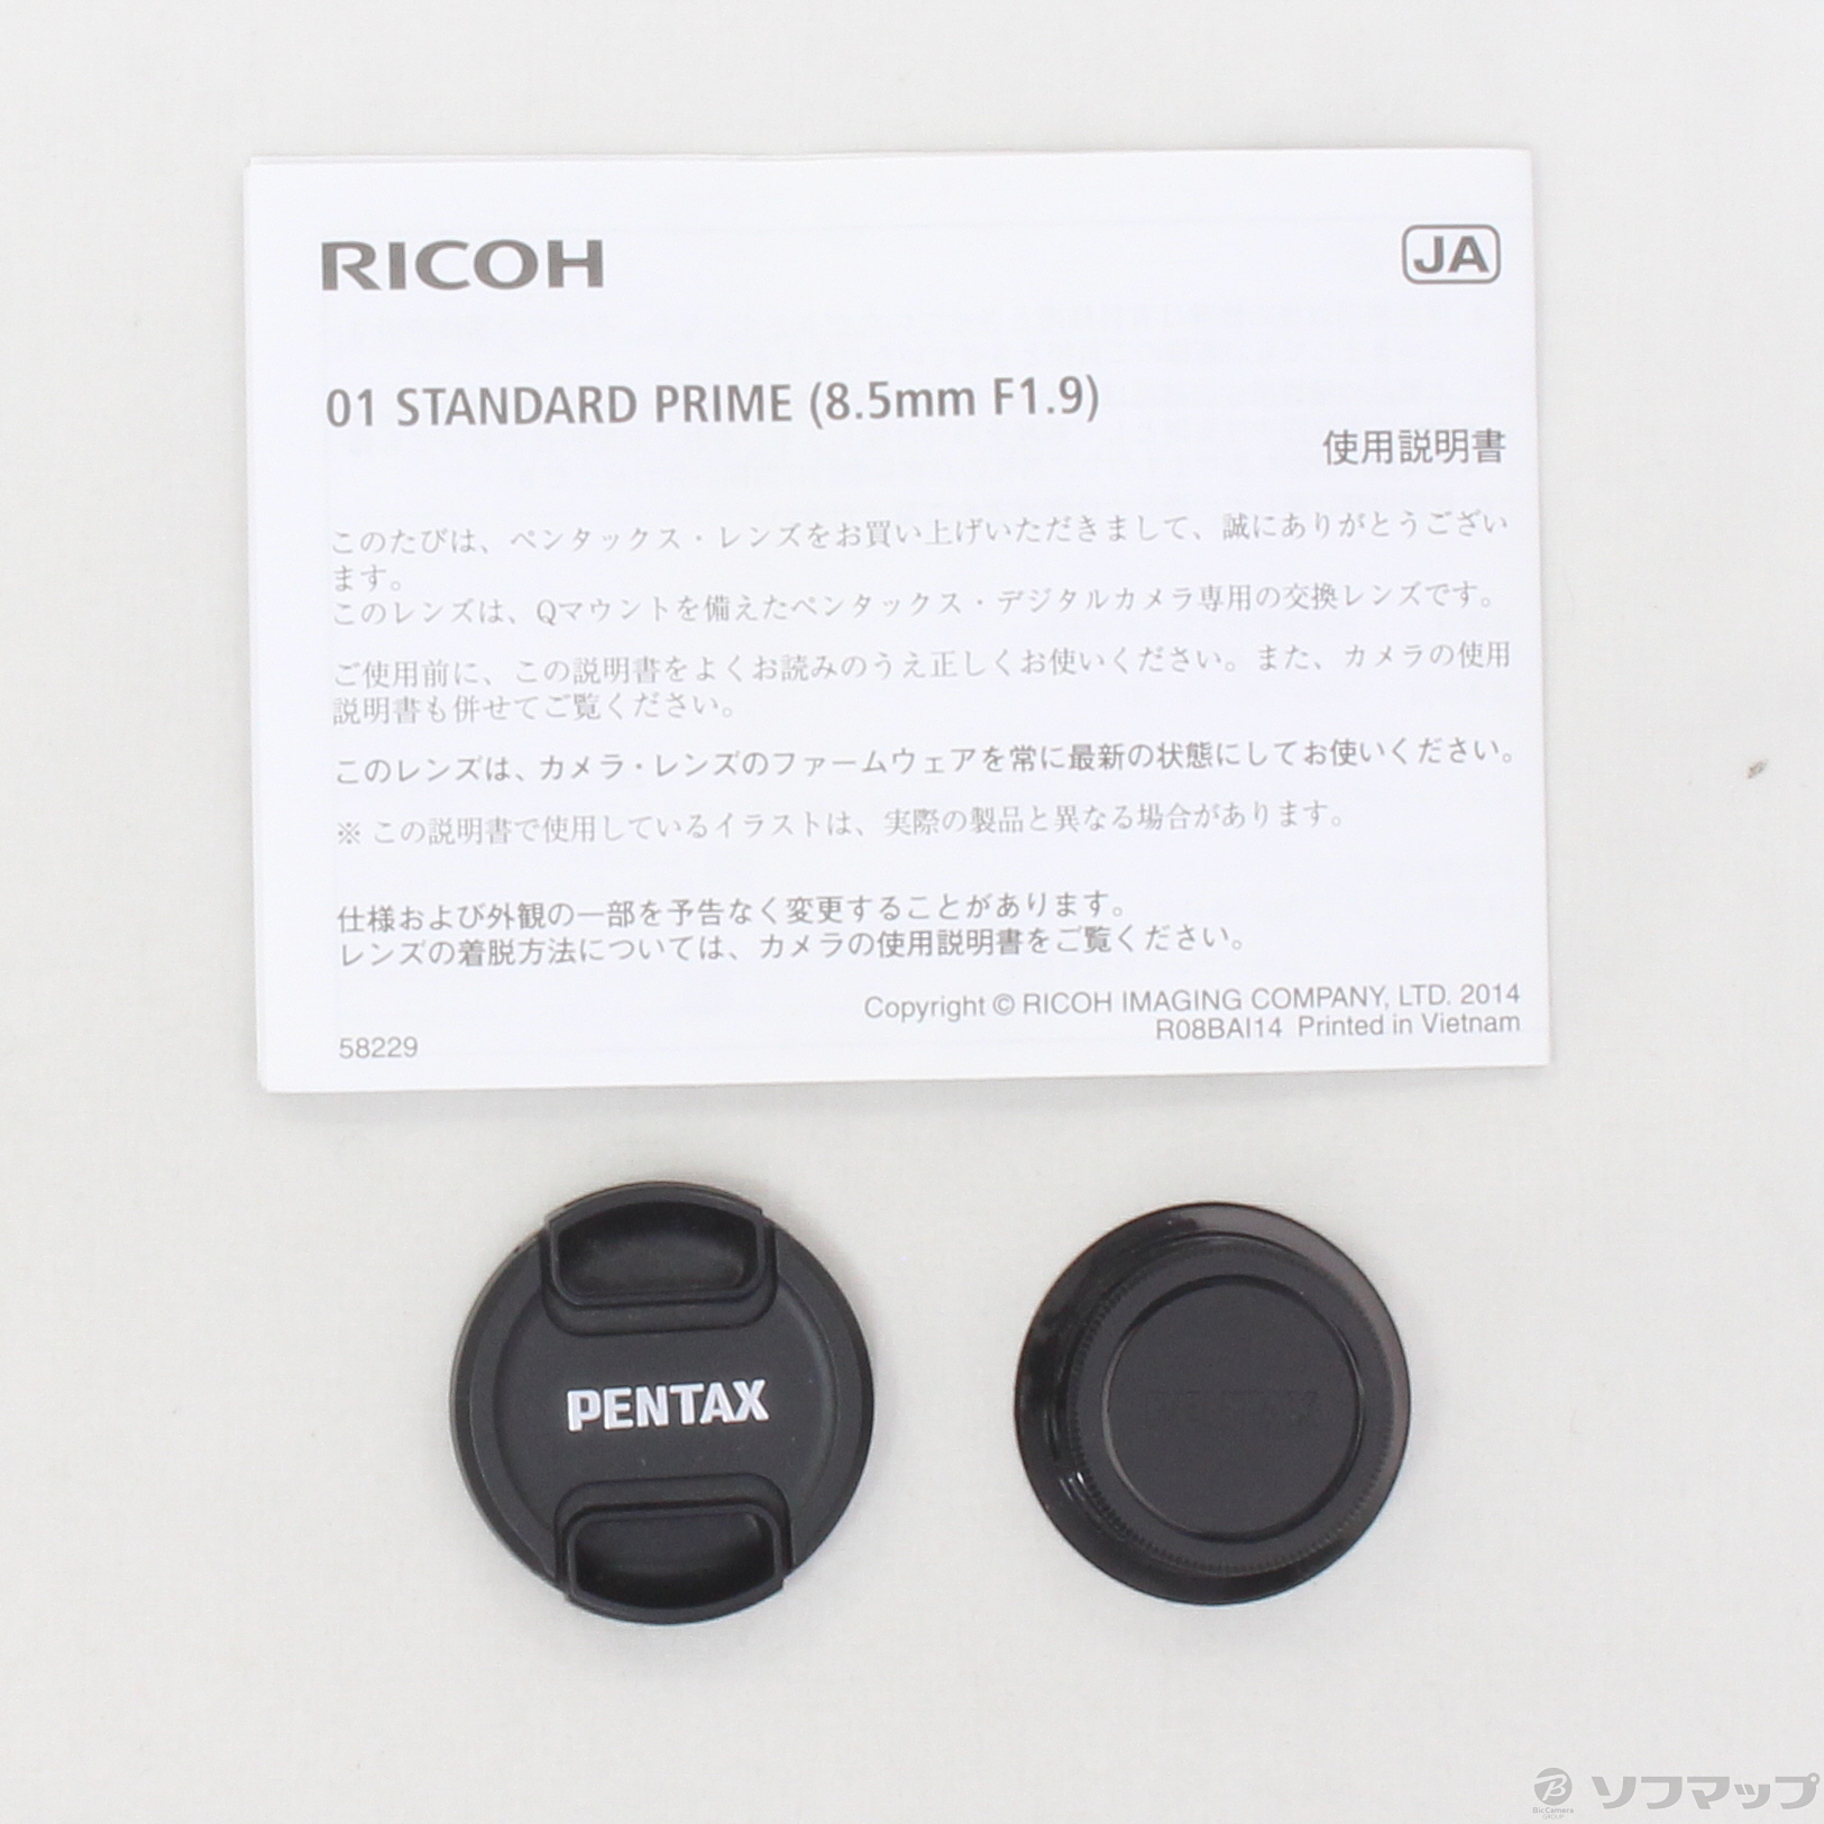 中古】PENTAX 01 STANDARD PRIME レンズ Q 8.5mm F1.9 [2133030672799